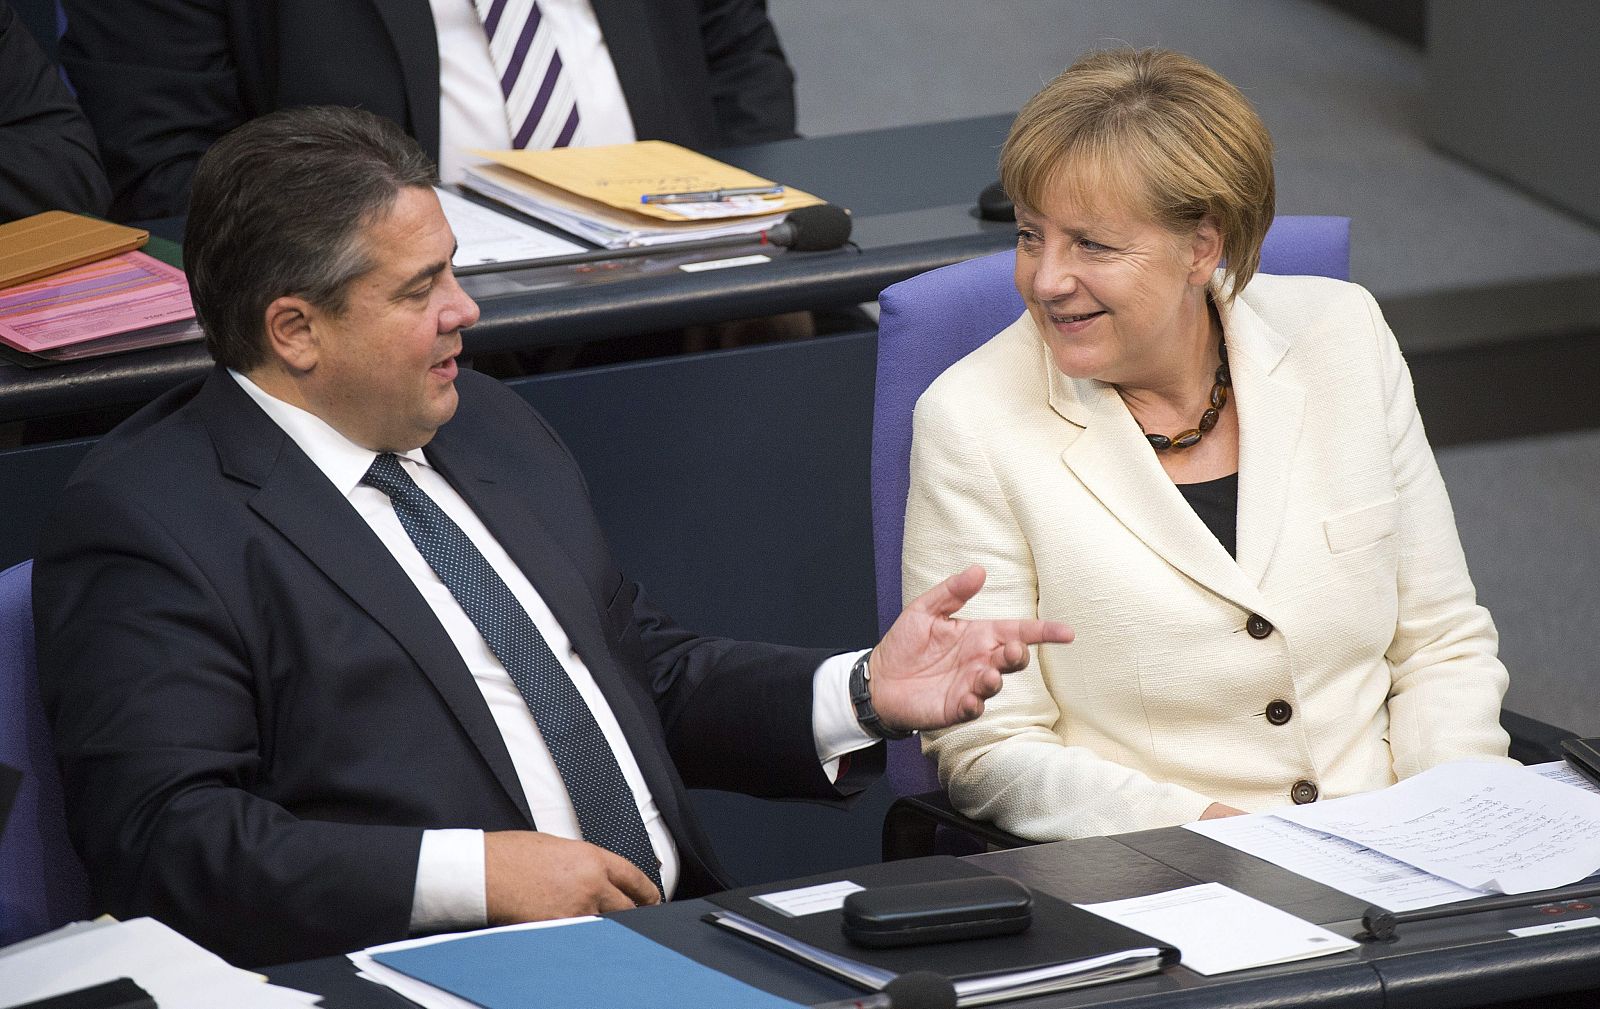 La canciller alemana, Angela Merkel, conversa con el ministro de Economía, Sigmar Gabriel, durante el debate de política general en el Bundestag en Berlín